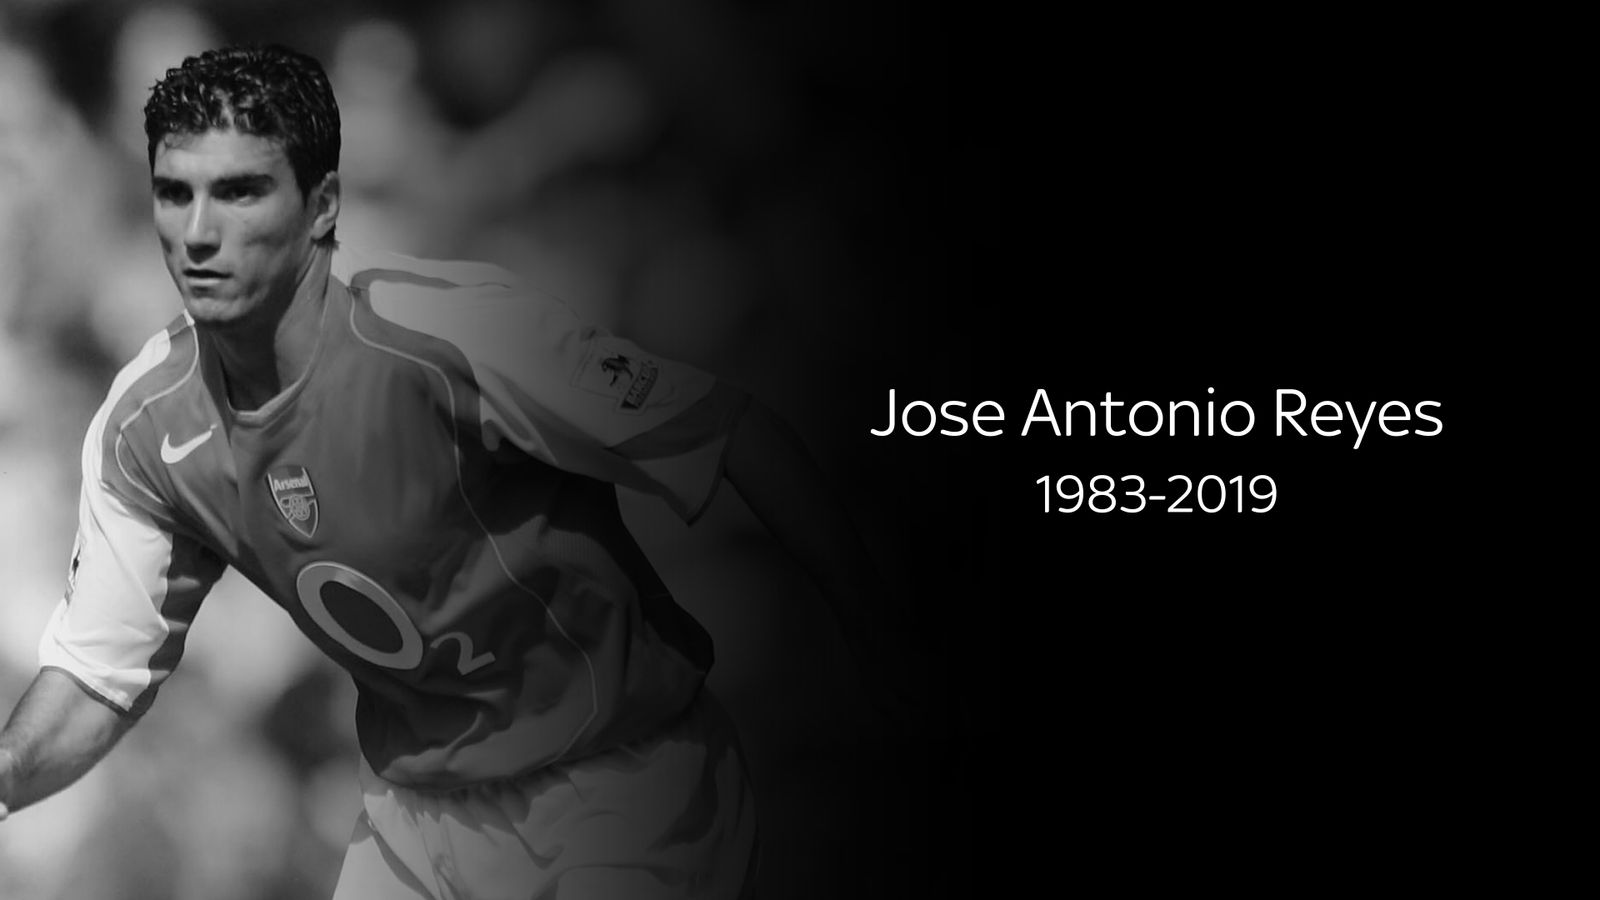 Former Arsenal star Jose Antonio Reyes, 35, dies in car crash